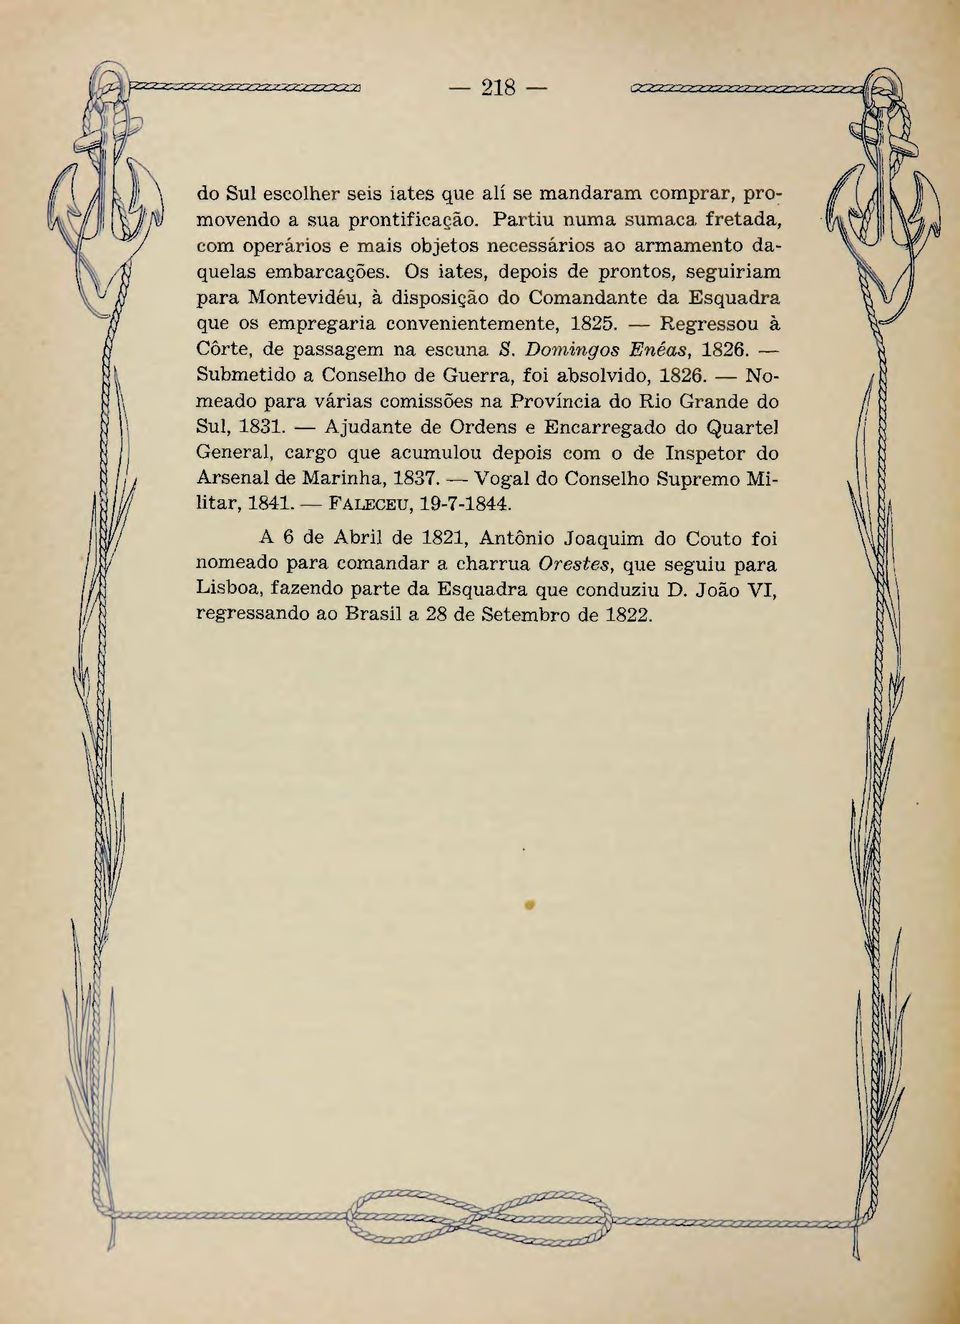 Domingos Enêas, 1826. Submetido a Conselho de Guerra, foi absolvido, 1826. Nomeado para várias comissões na Província do Rio Grande do Sul, 1831.